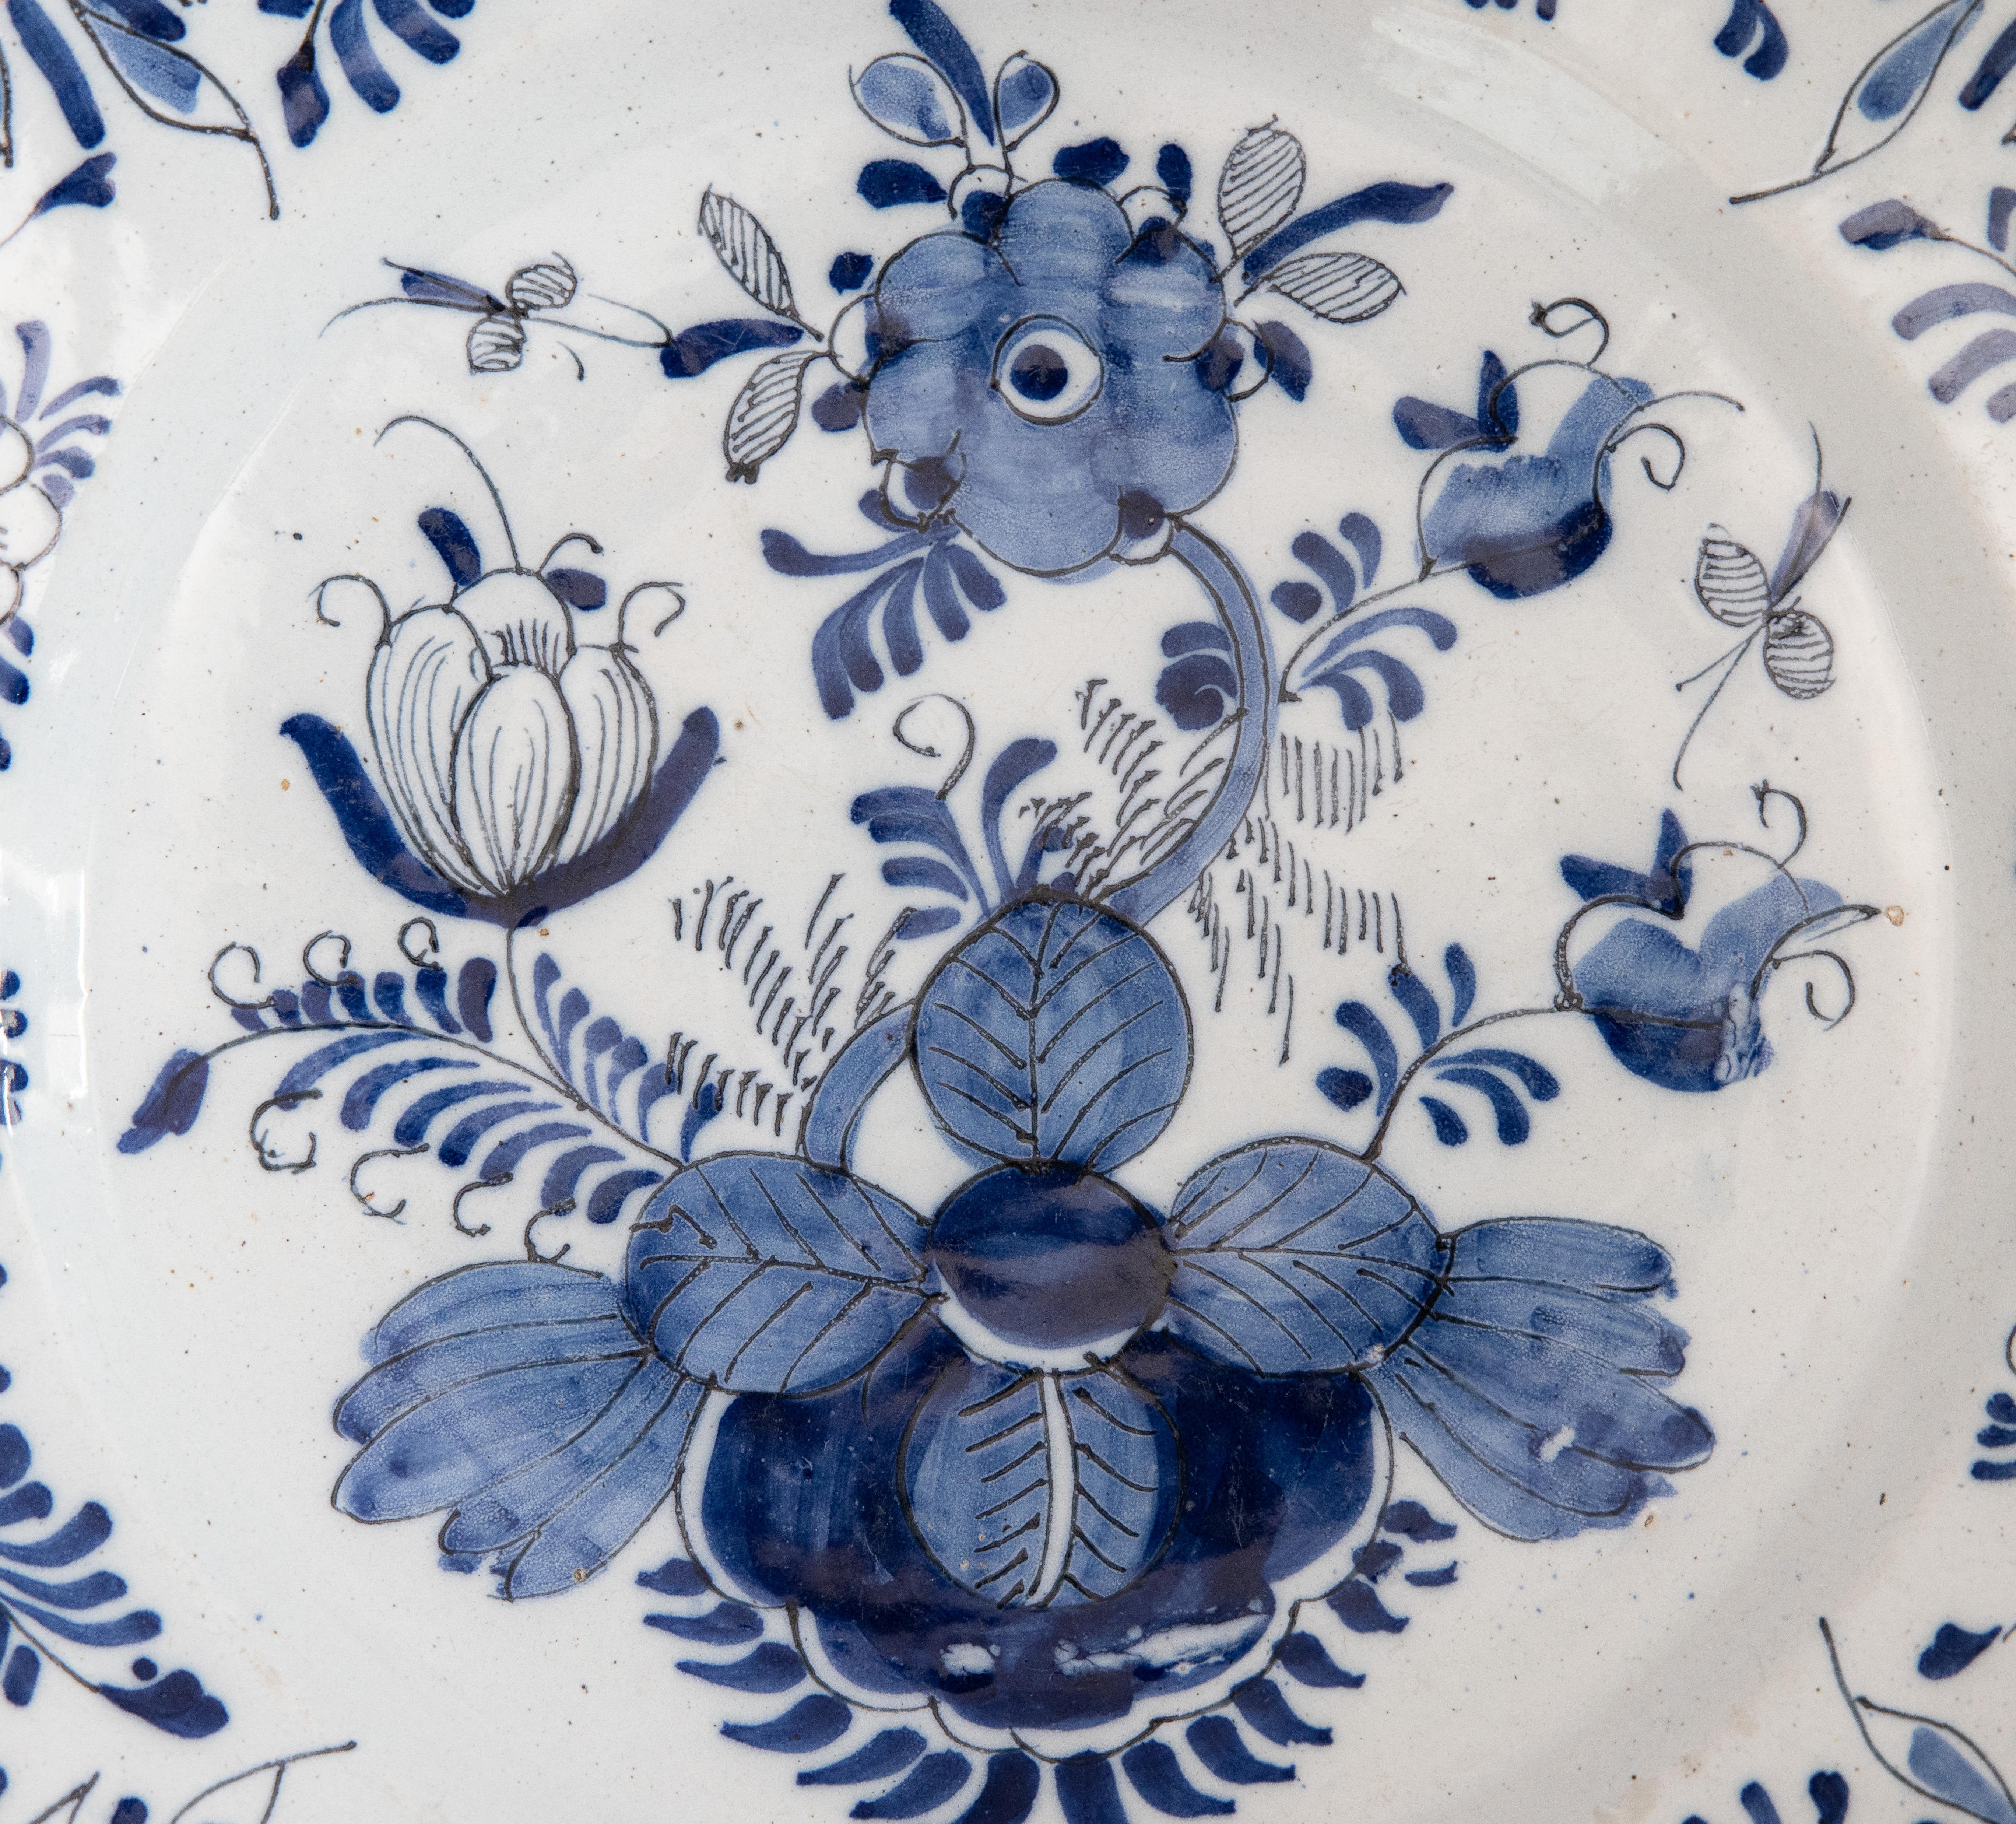 Gran bandeja de Delft holandesa del siglo XVIII pintada a mano con un diseño floral y foliado con insectos en azul cobalto y blanco, hacia 1750. Este precioso plato grande sería maravilloso añadido a una colección, expuesto en una pared, un estante